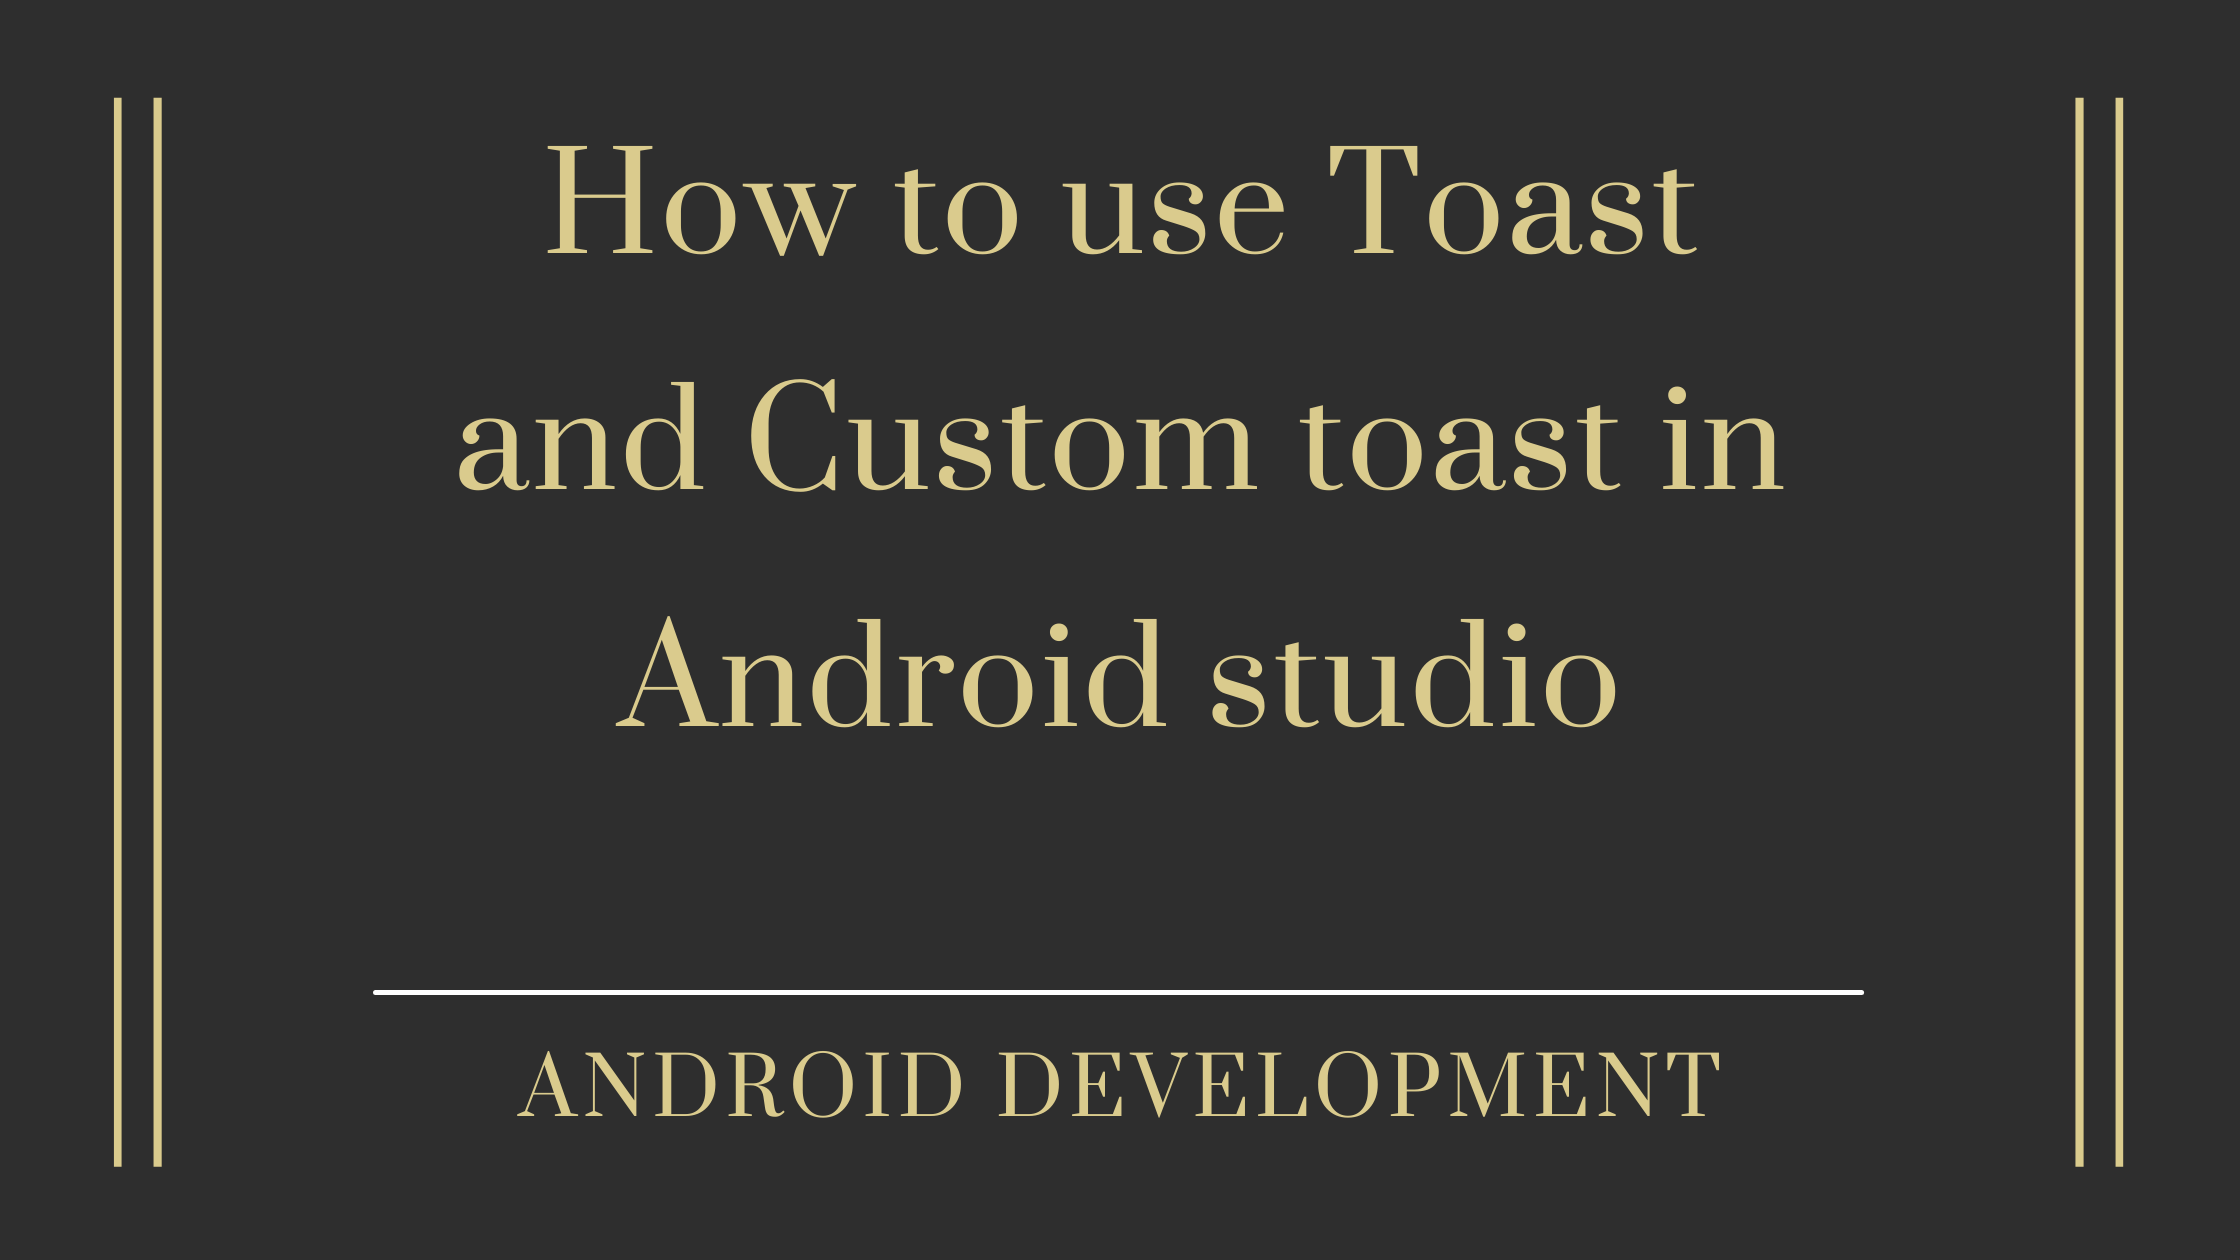 Toast and custom toast